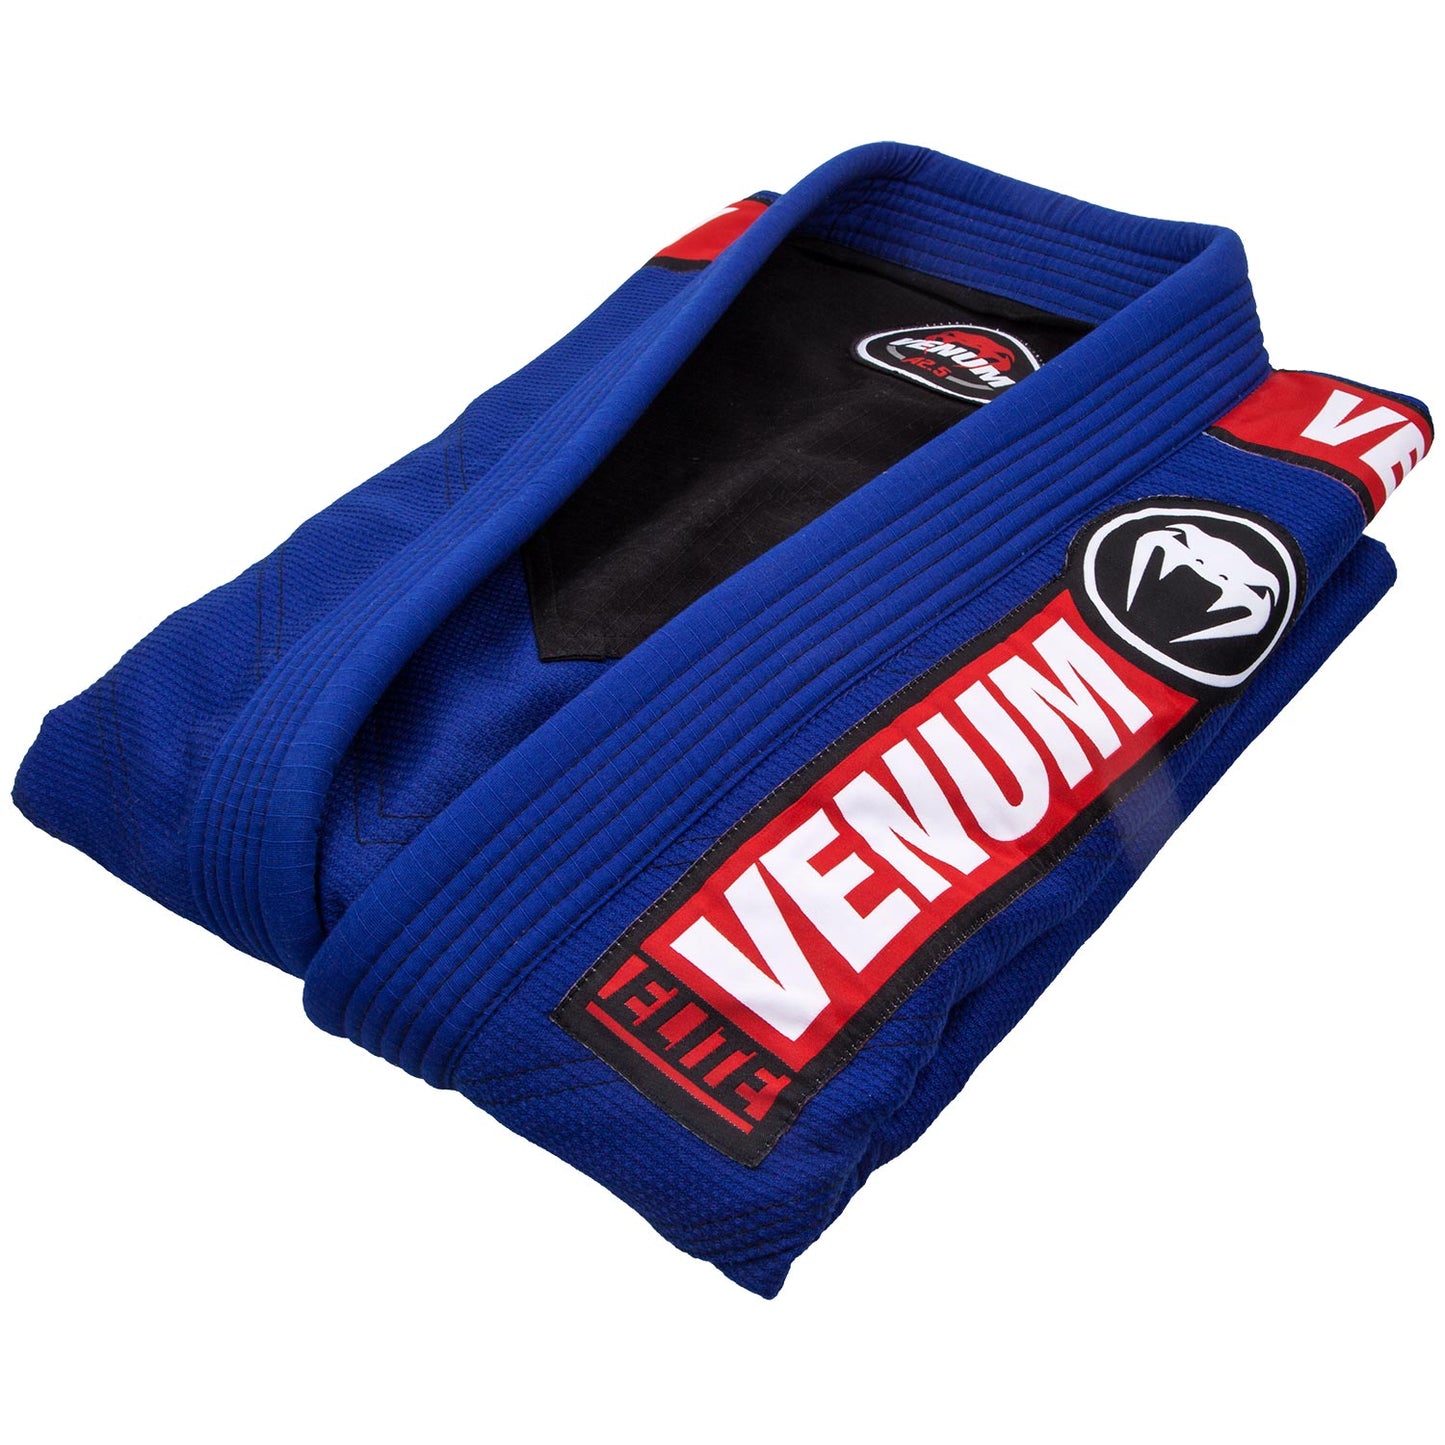 Venum Elite 2.0 BJJ Gi - (inclusief tas) - blauw